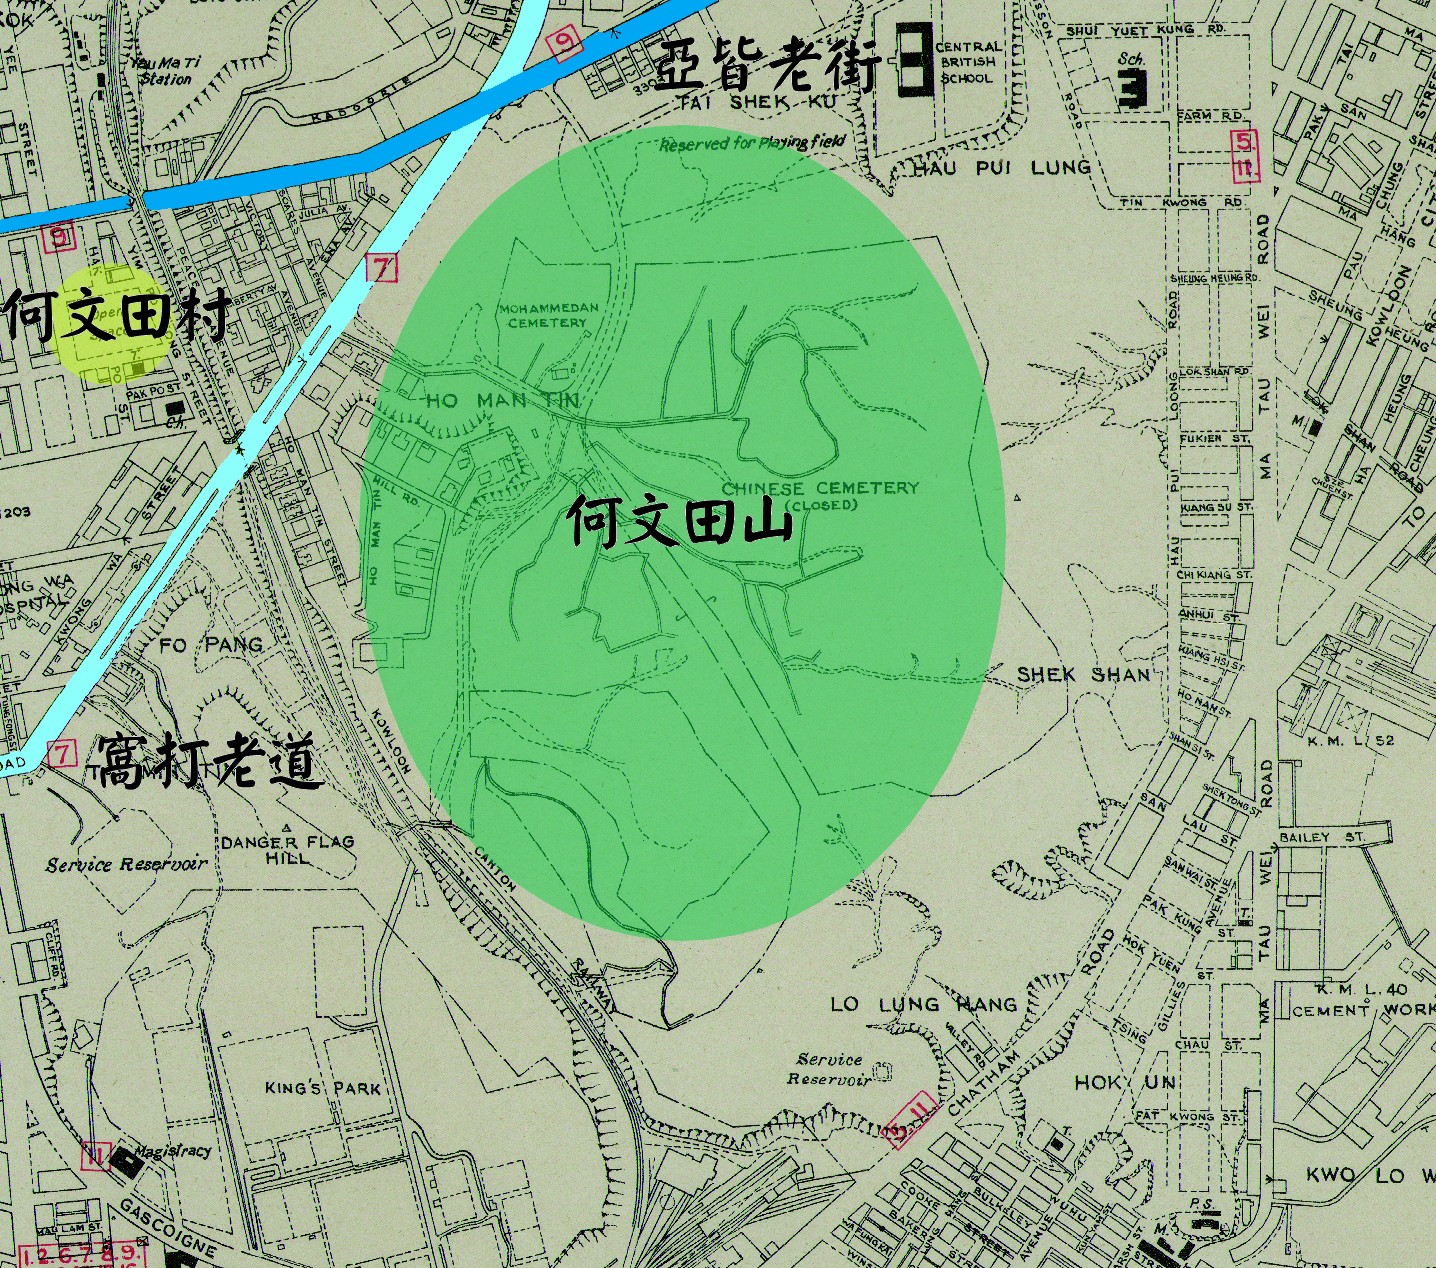 1947年的九龍半島地圖。可見當時何文田的概念已經由何文田村擴展至何文田山，但和老龍坑仍是兩個不同的地名。（圖片來源：地政總署測繪處）